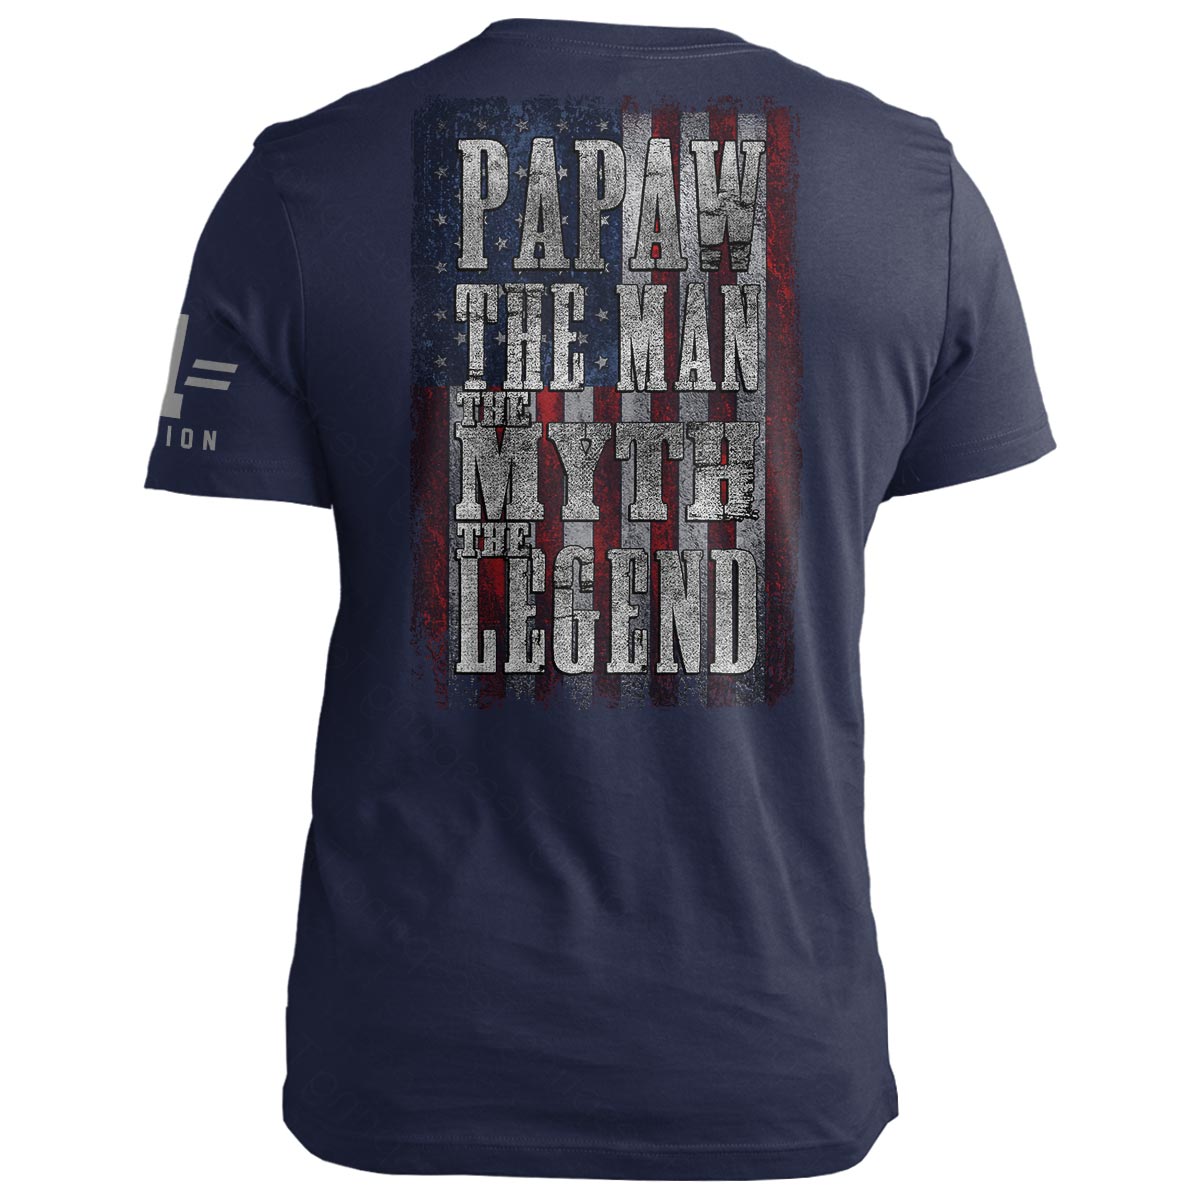 PAPAW: Man Myth Legend